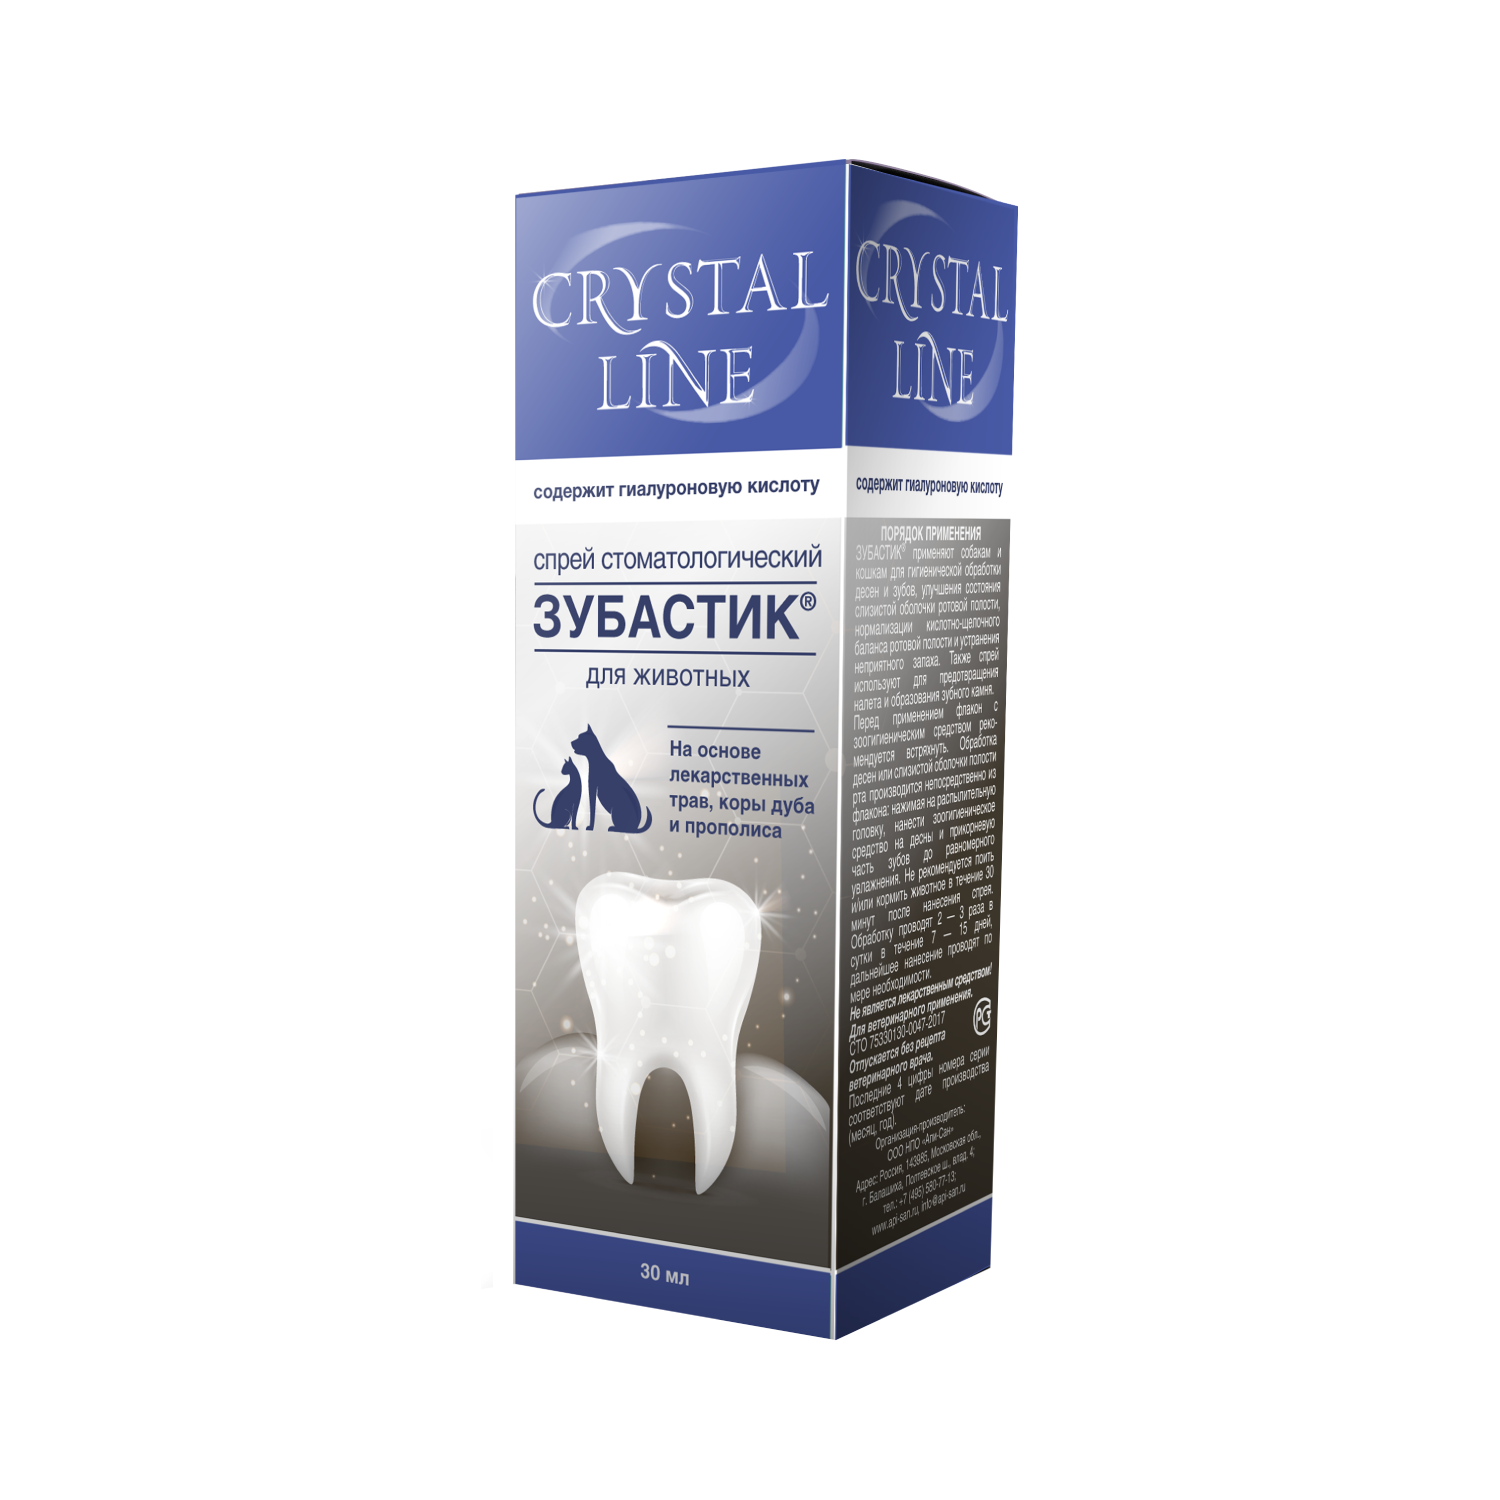 Спрей стоматологический для животных Apicenna Crystal line Зубастик 30мл - фото 1